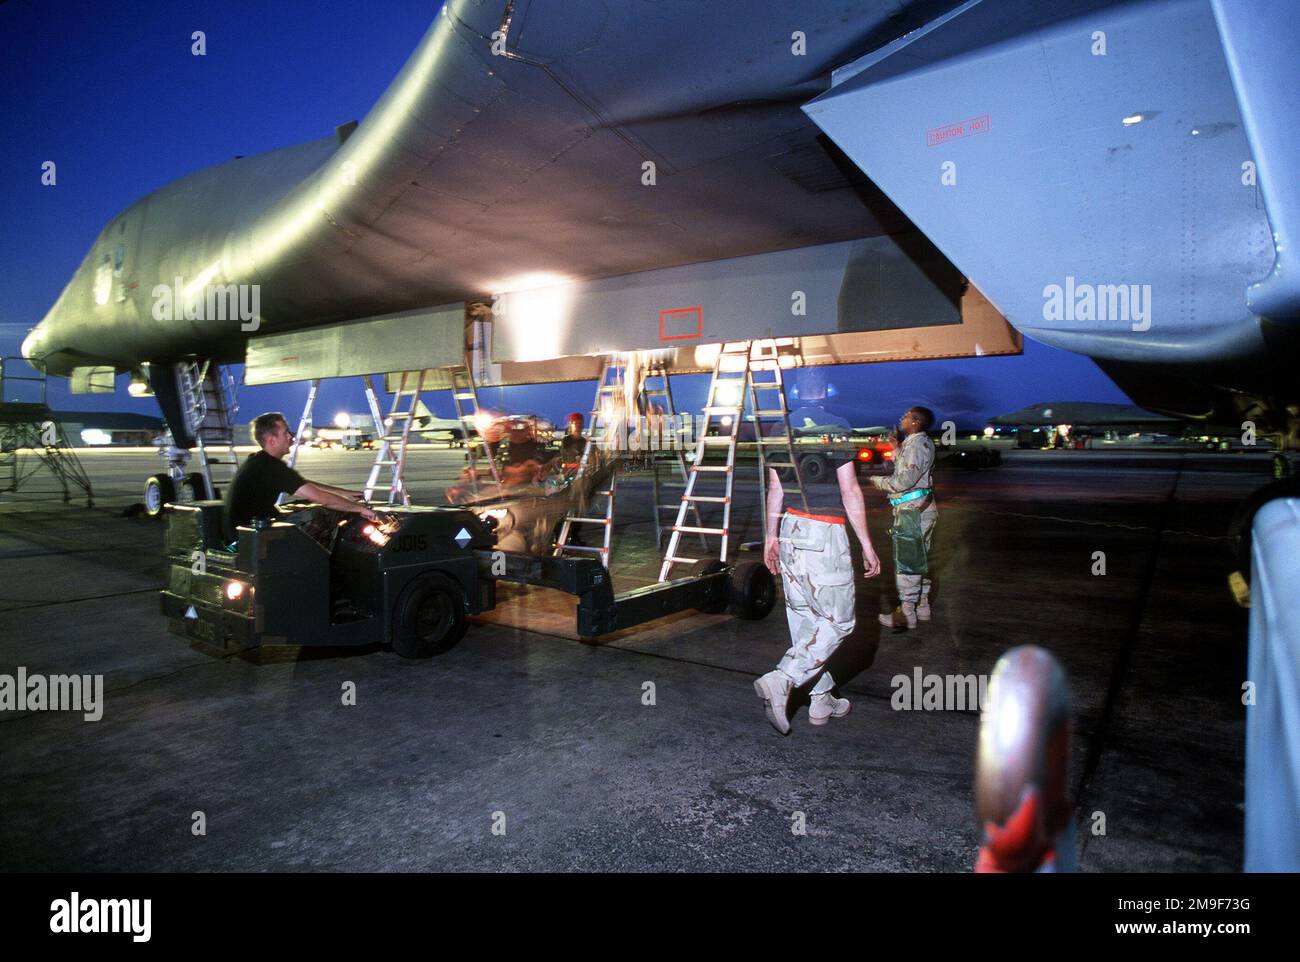 US Air Force-Personal für das 9. Bombengeschwader lädt Munition in ein USAF B-1B Lancer-Flugzeug bei Dyess AFB, Texas. Bei dem Foto handelt es sich um ein beabsichtigtes Zeitrafferfoto. Aus DEM AIRMAN Magazine, August 2000 Artikel "One Hot Bomber". US Air Force-Personal für das 9. Bombengeschwader lädt Munition in ein USAF B-1B Lancer-Flugzeug bei Dyess AFB, Texas. Bei dem Foto handelt es sich um ein beabsichtigtes Zeitrafferfoto. Aus dem Airman Magazine, August 2000 Artikel "One Hot Bomber". Stockfoto